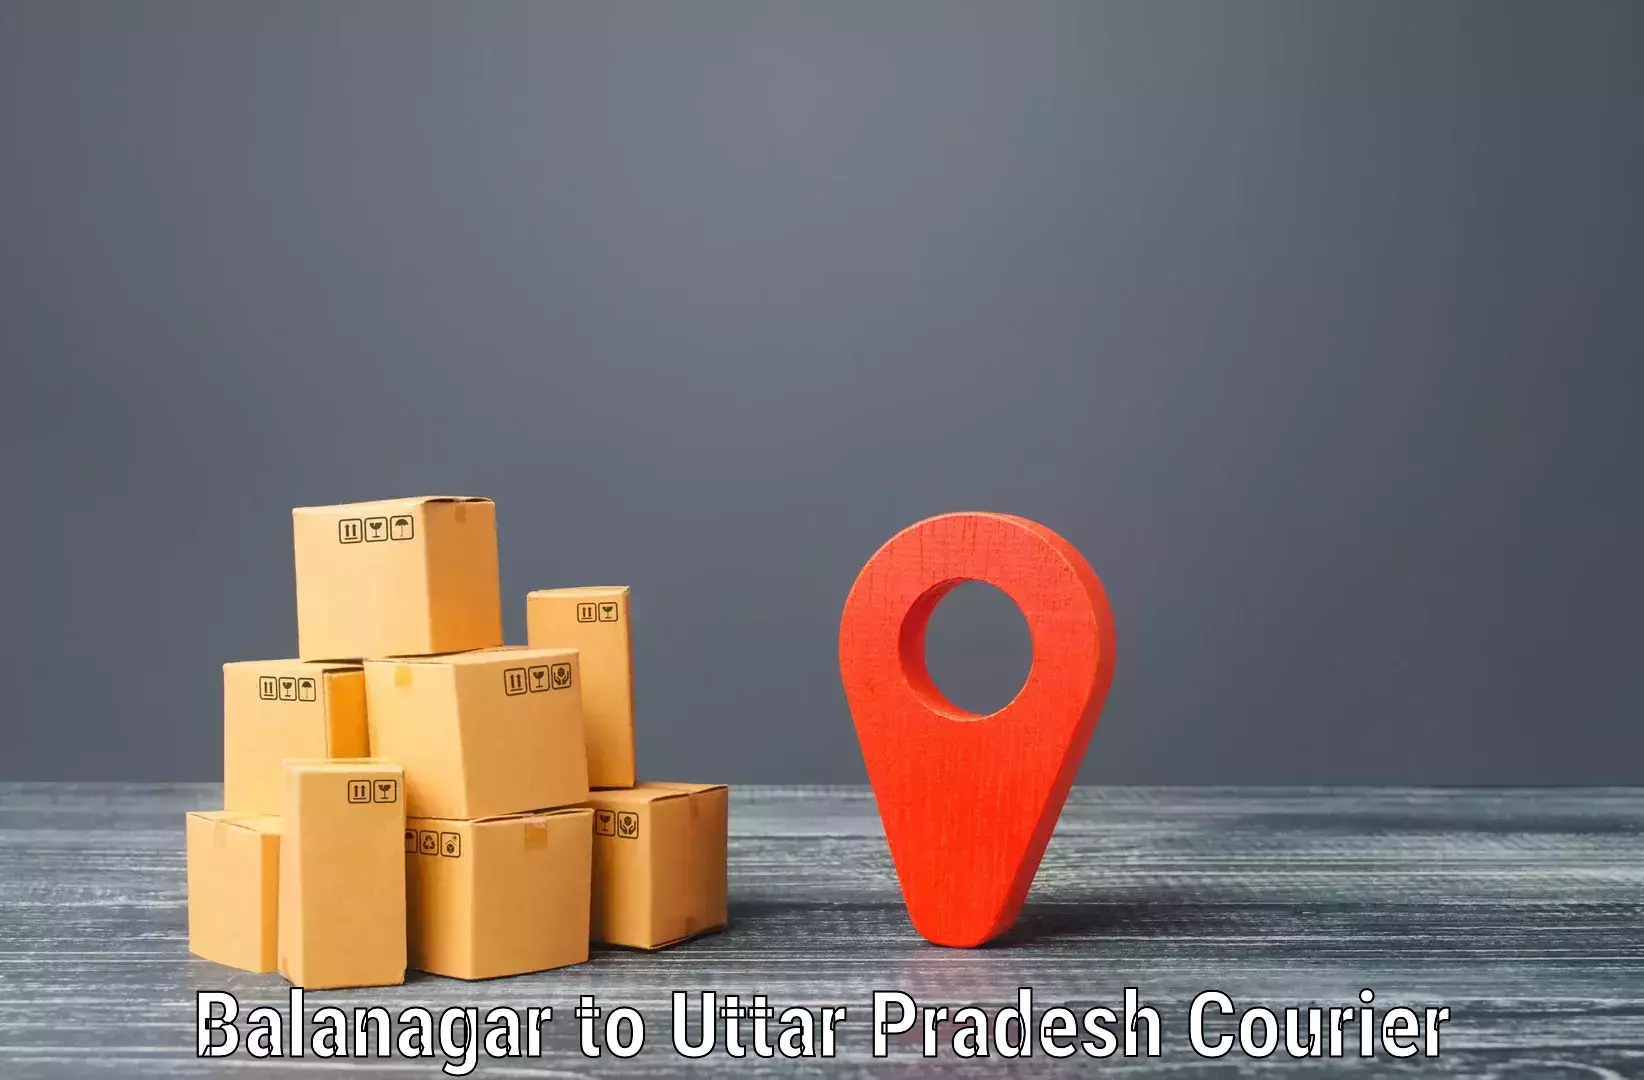 Reliable courier service in Balanagar to Marihan